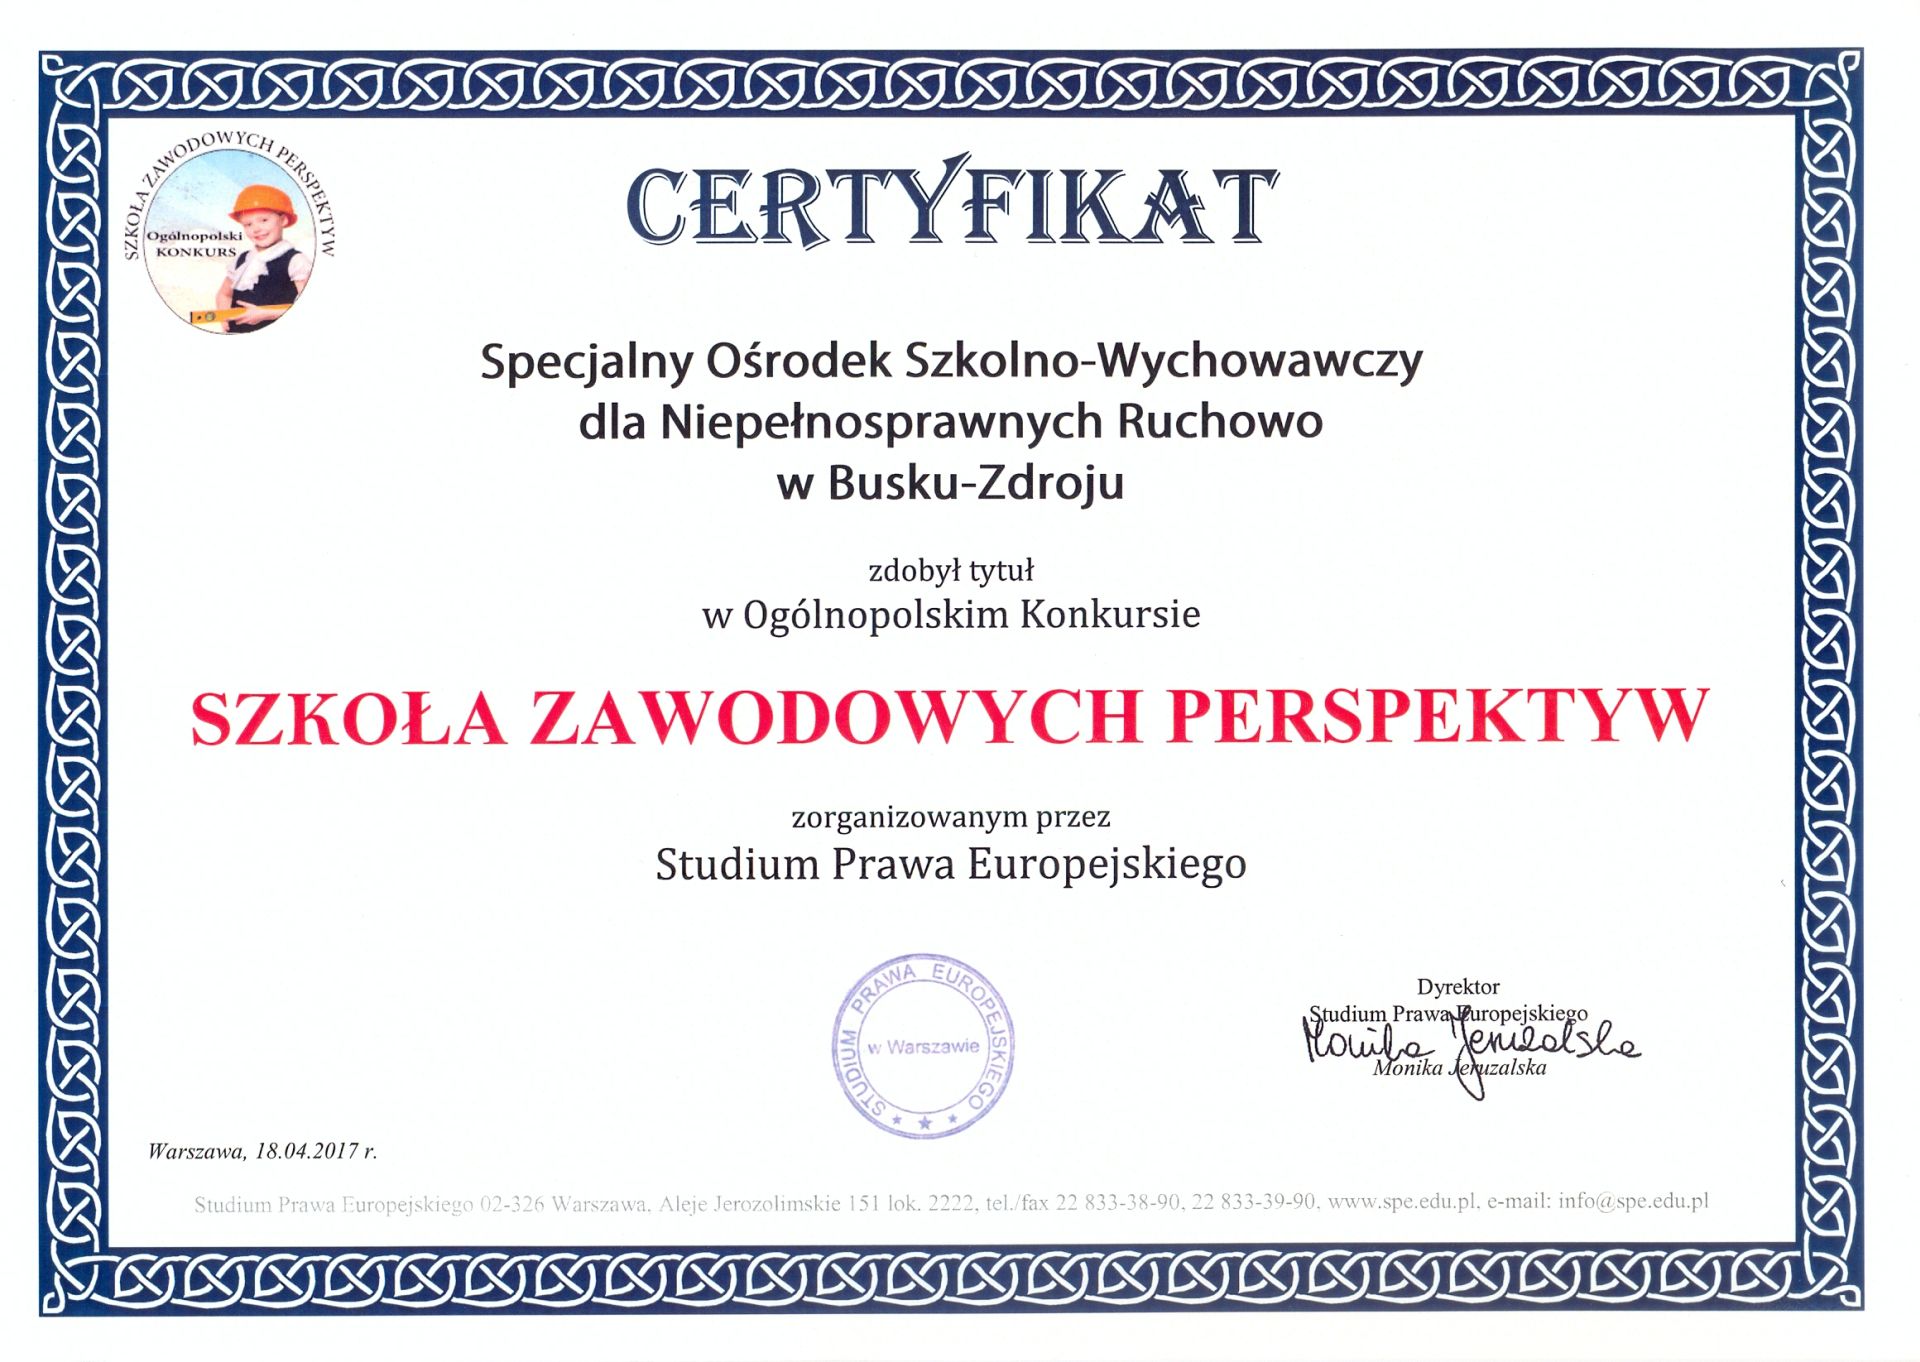 certyfikat_szkola_zaw_perspektyw0001_1.jpg